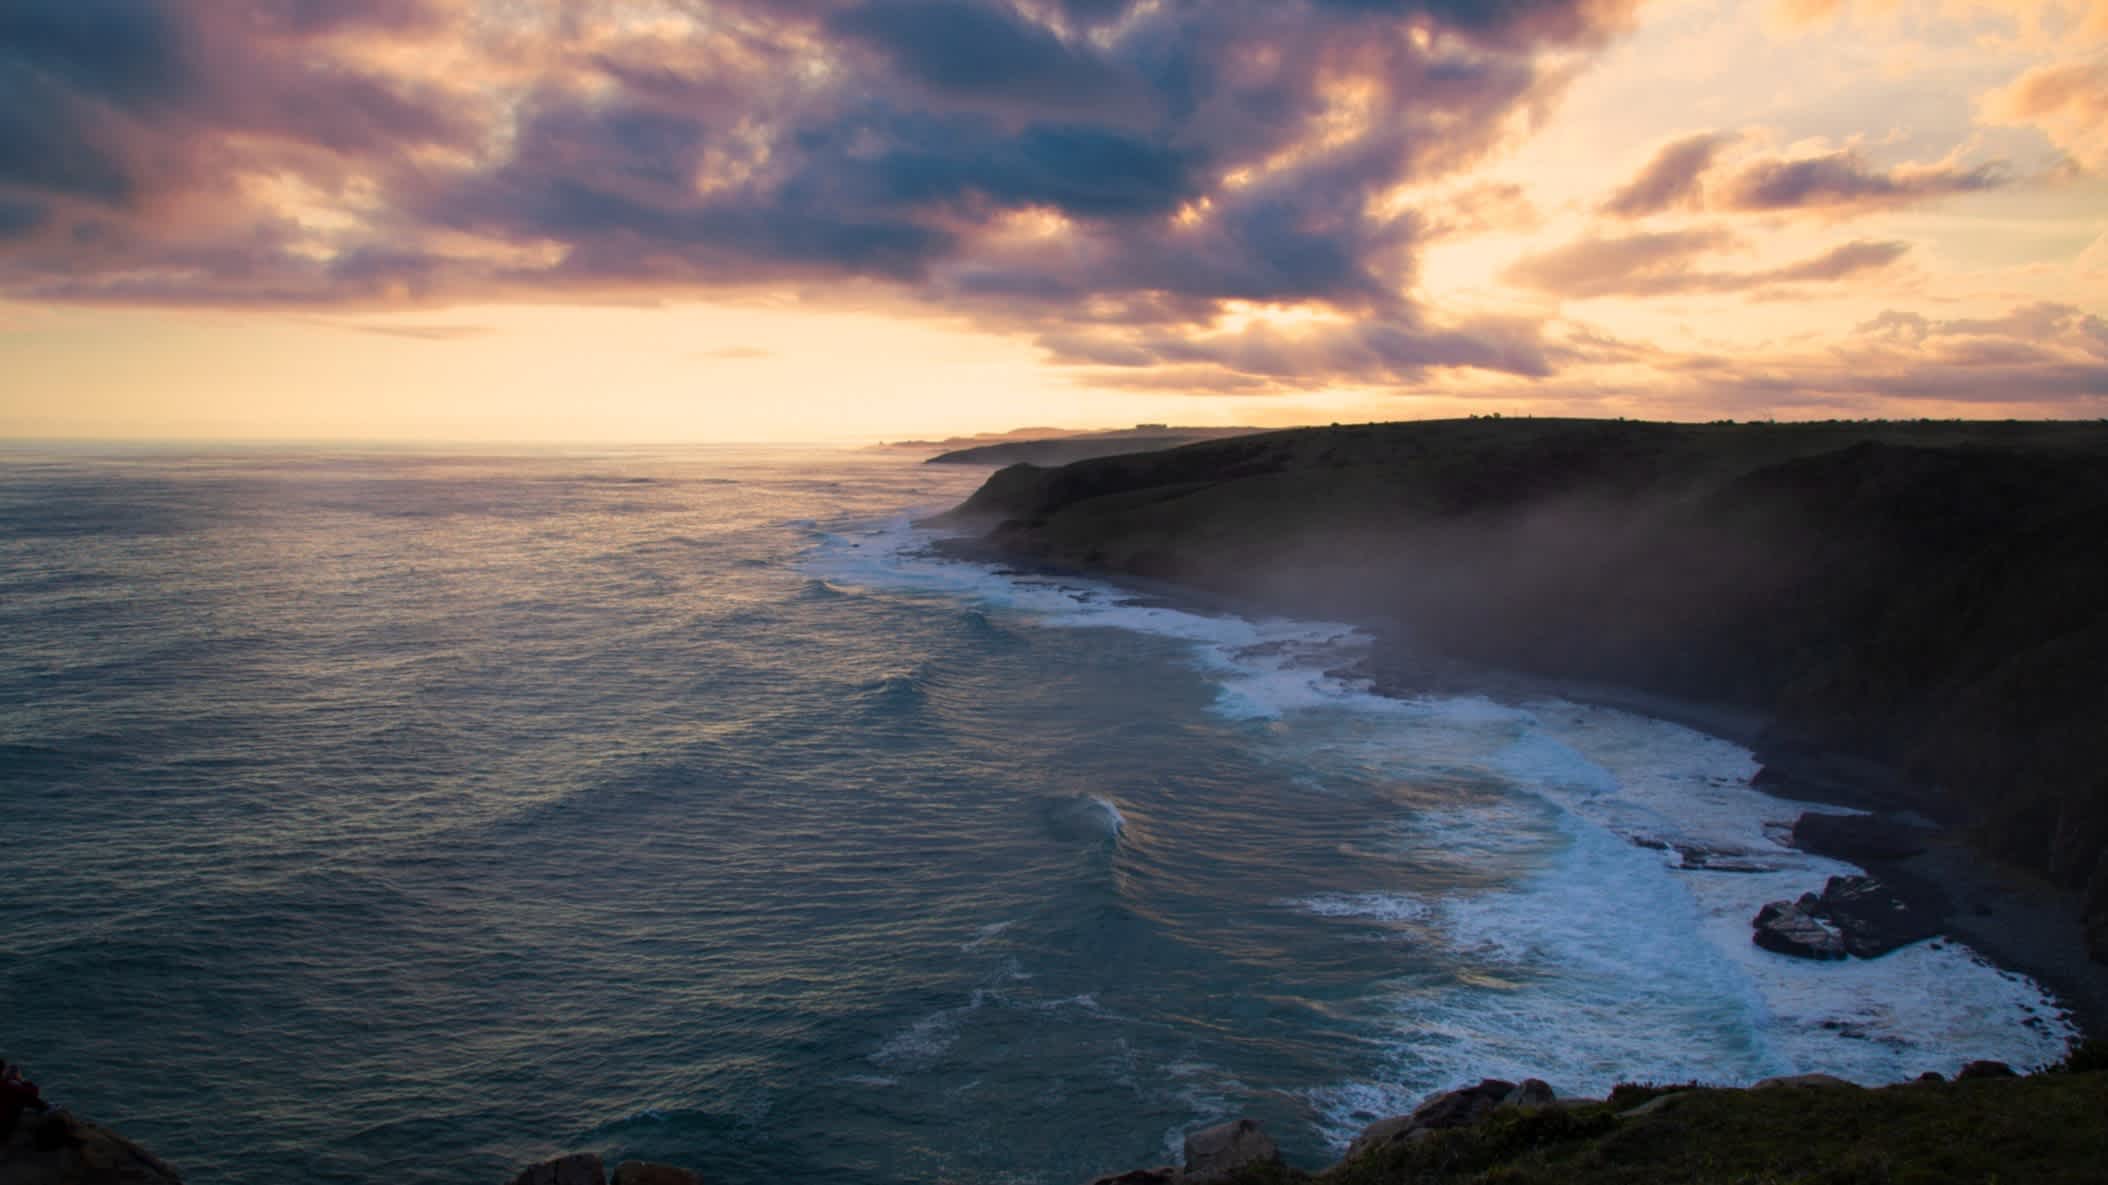 Die Klippen der Morgan Bay bei gedimmtem Sonnenlicht und Wolken am Himmel mit Aussicht auf das Meer an der wilden Eastern Cape Küste Südafrikas. 